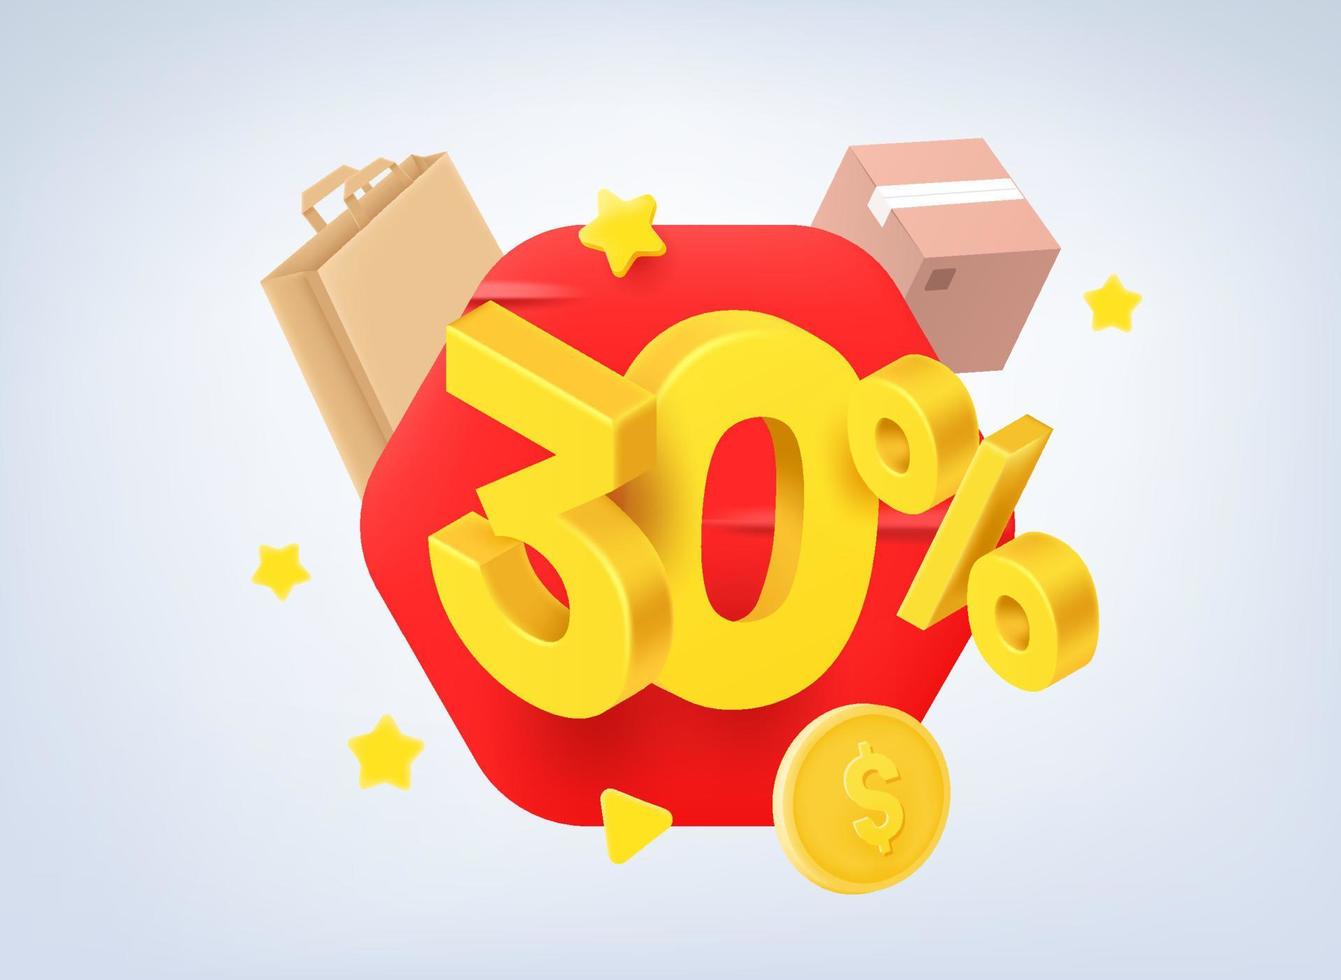 Concetto di vendita del 30 percento. illustrazione vettoriale 3d